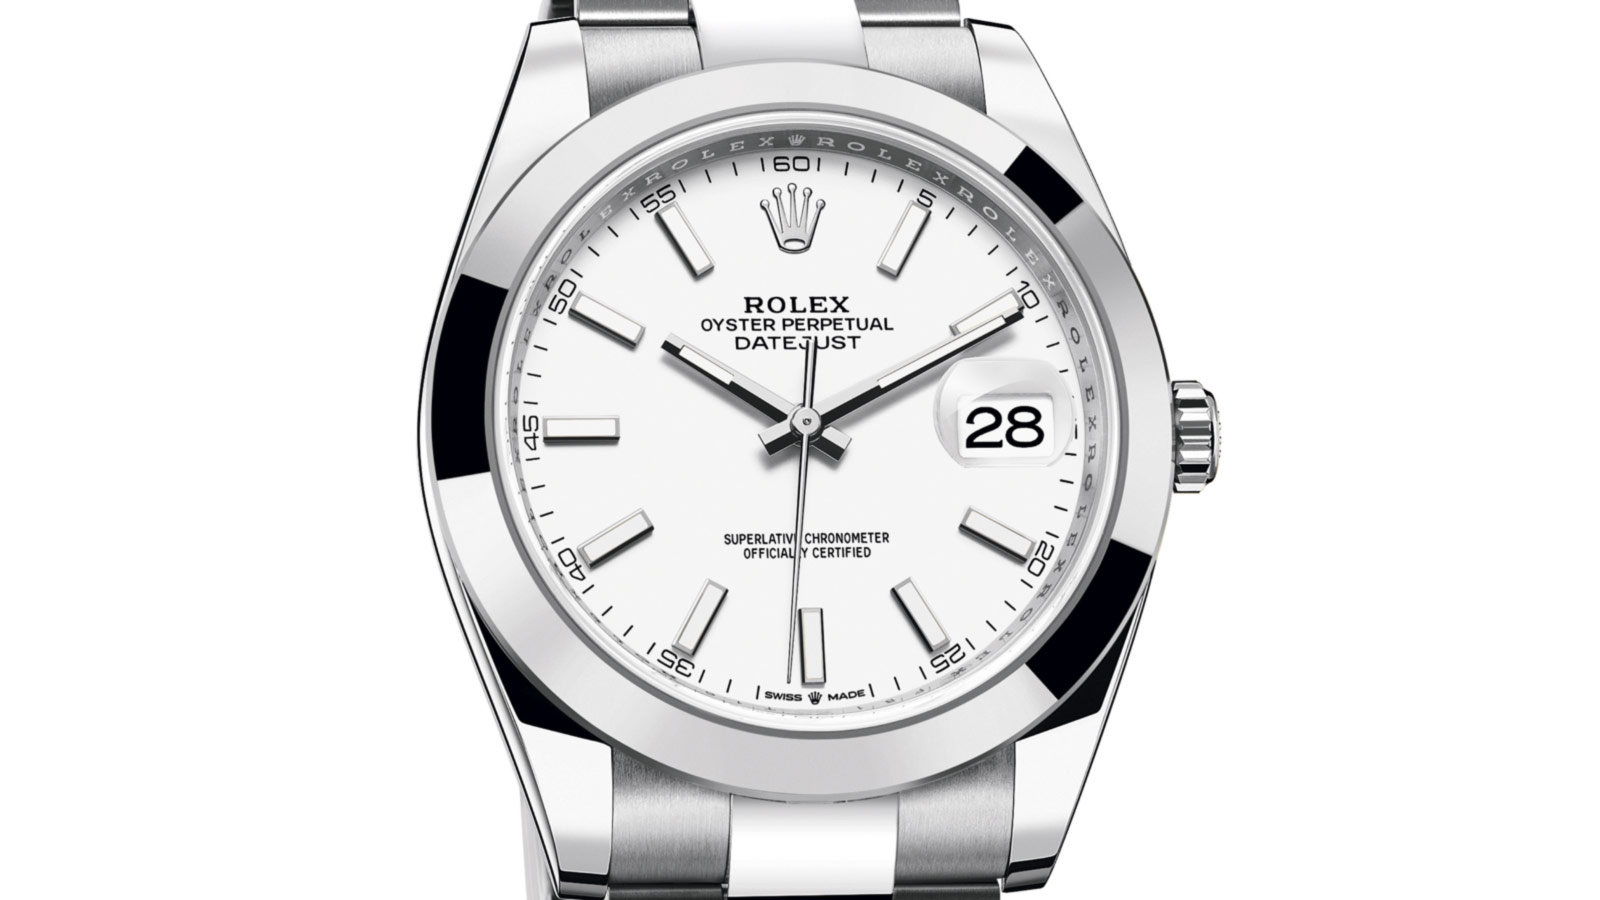 Nærbilde av Rolex-klokke med hvit skive.